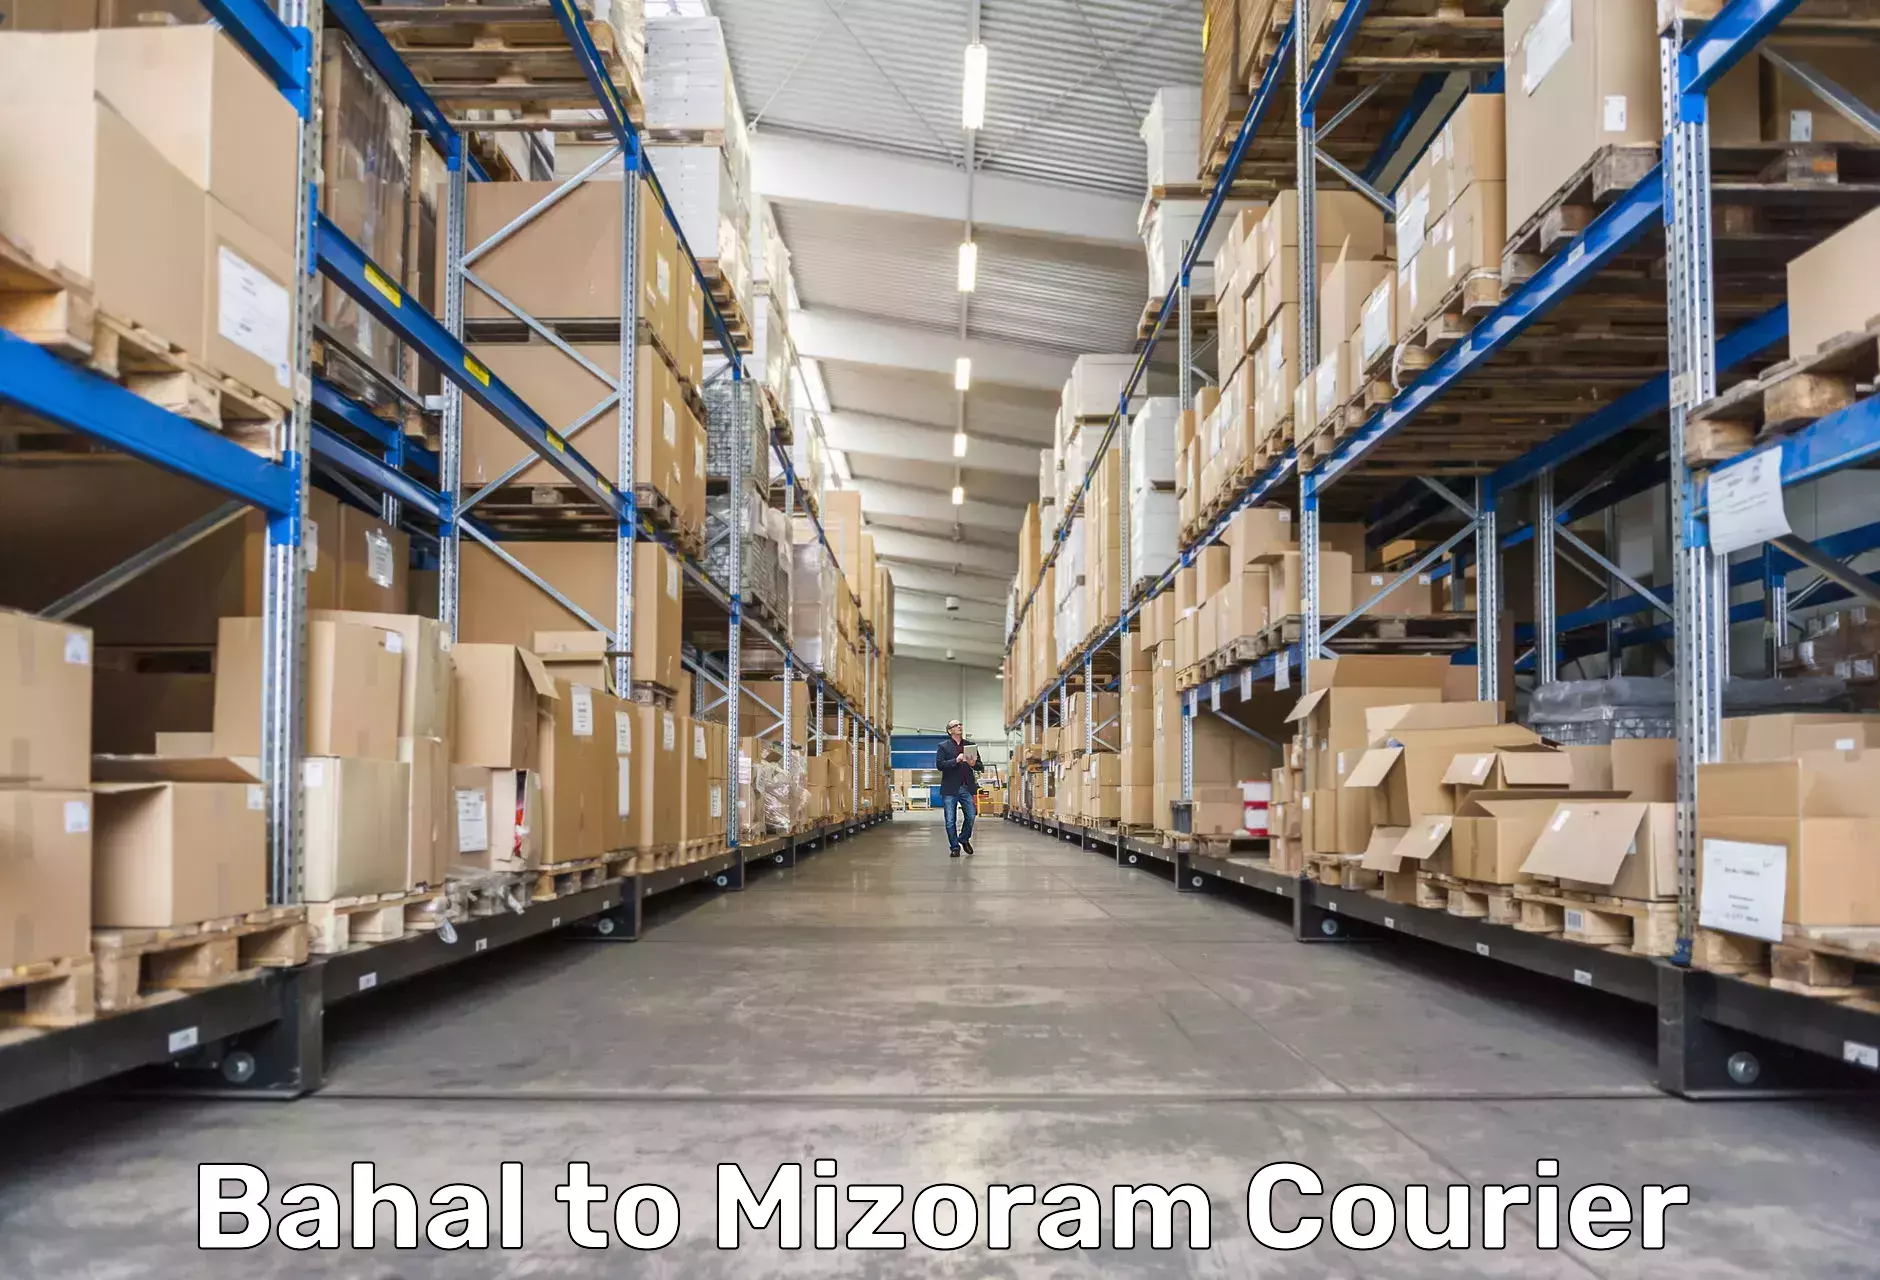 Punctual parcel services Bahal to Aizawl